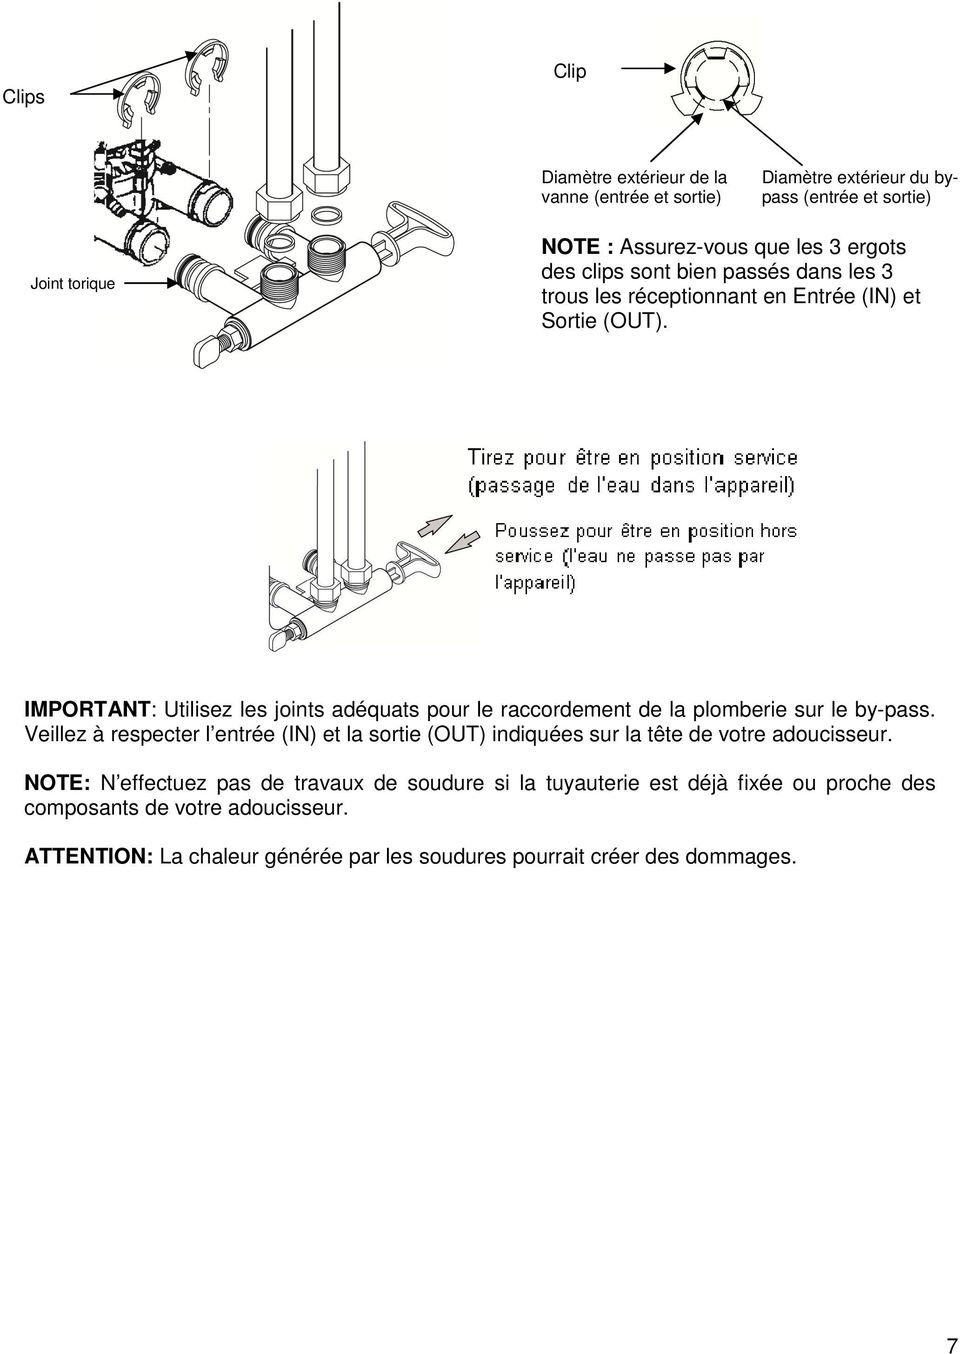 IMPORTANT: Utilisez les joints adéquats pour le raccordement de la plomberie sur le by-pass.